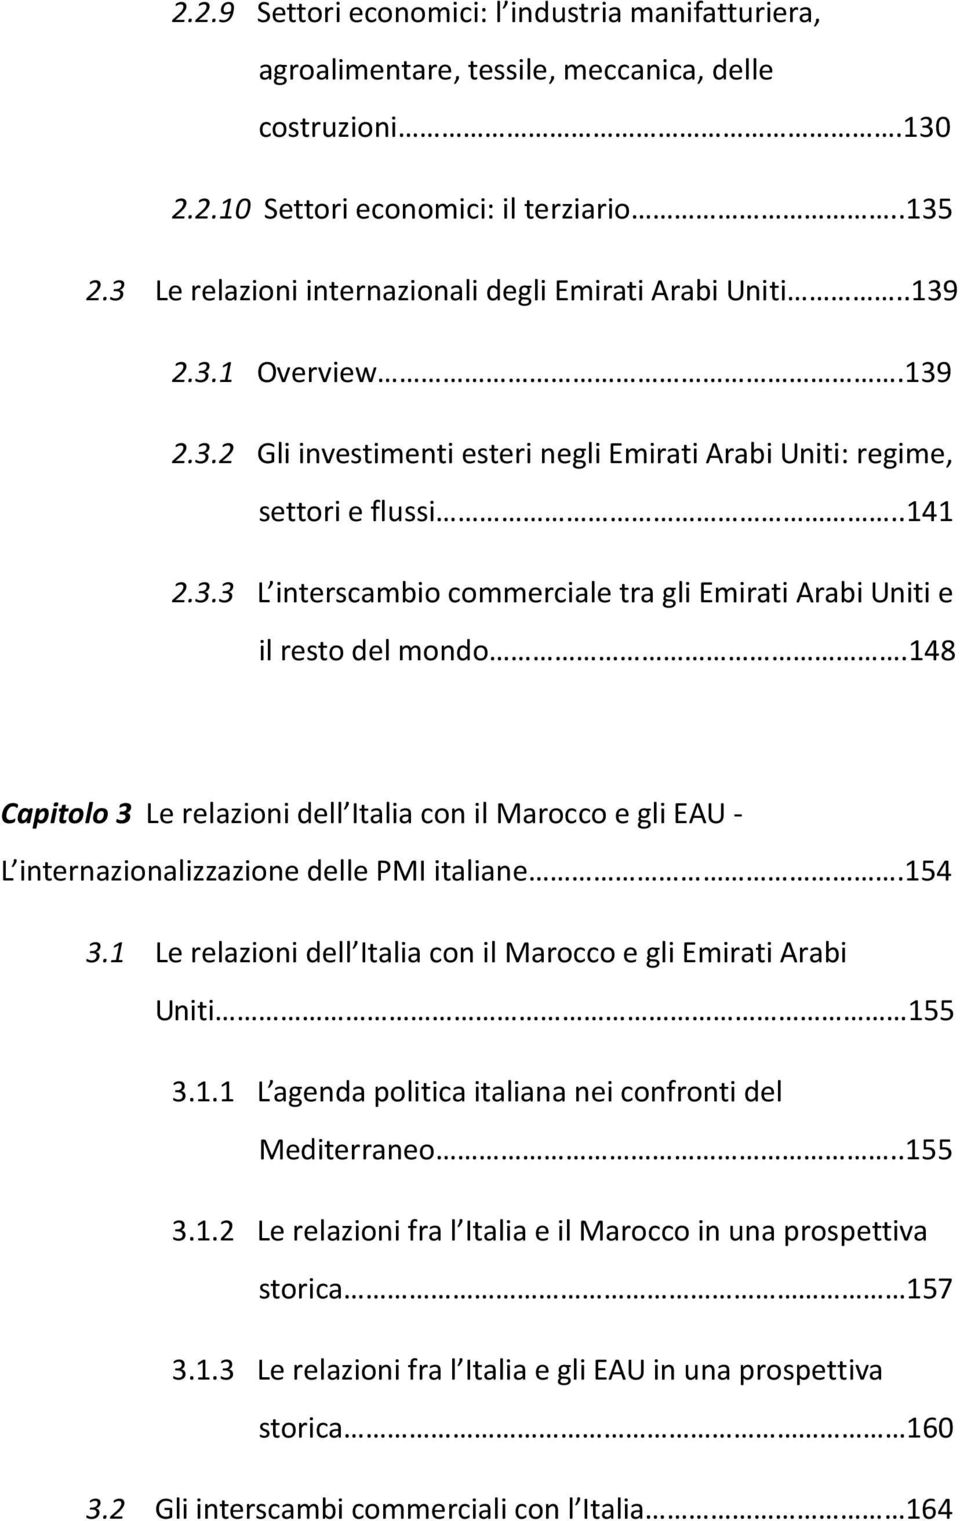 148 Capitolo 3 Le relazioni dell Italia con il Marocco e gli EAU - L internazionalizzazione delle PMI italiane.154 3.1 Le relazioni dell Italia con il Marocco e gli Emirati Arabi Uniti 155 3.1.1 L agenda politica italiana nei confronti del Mediterraneo.